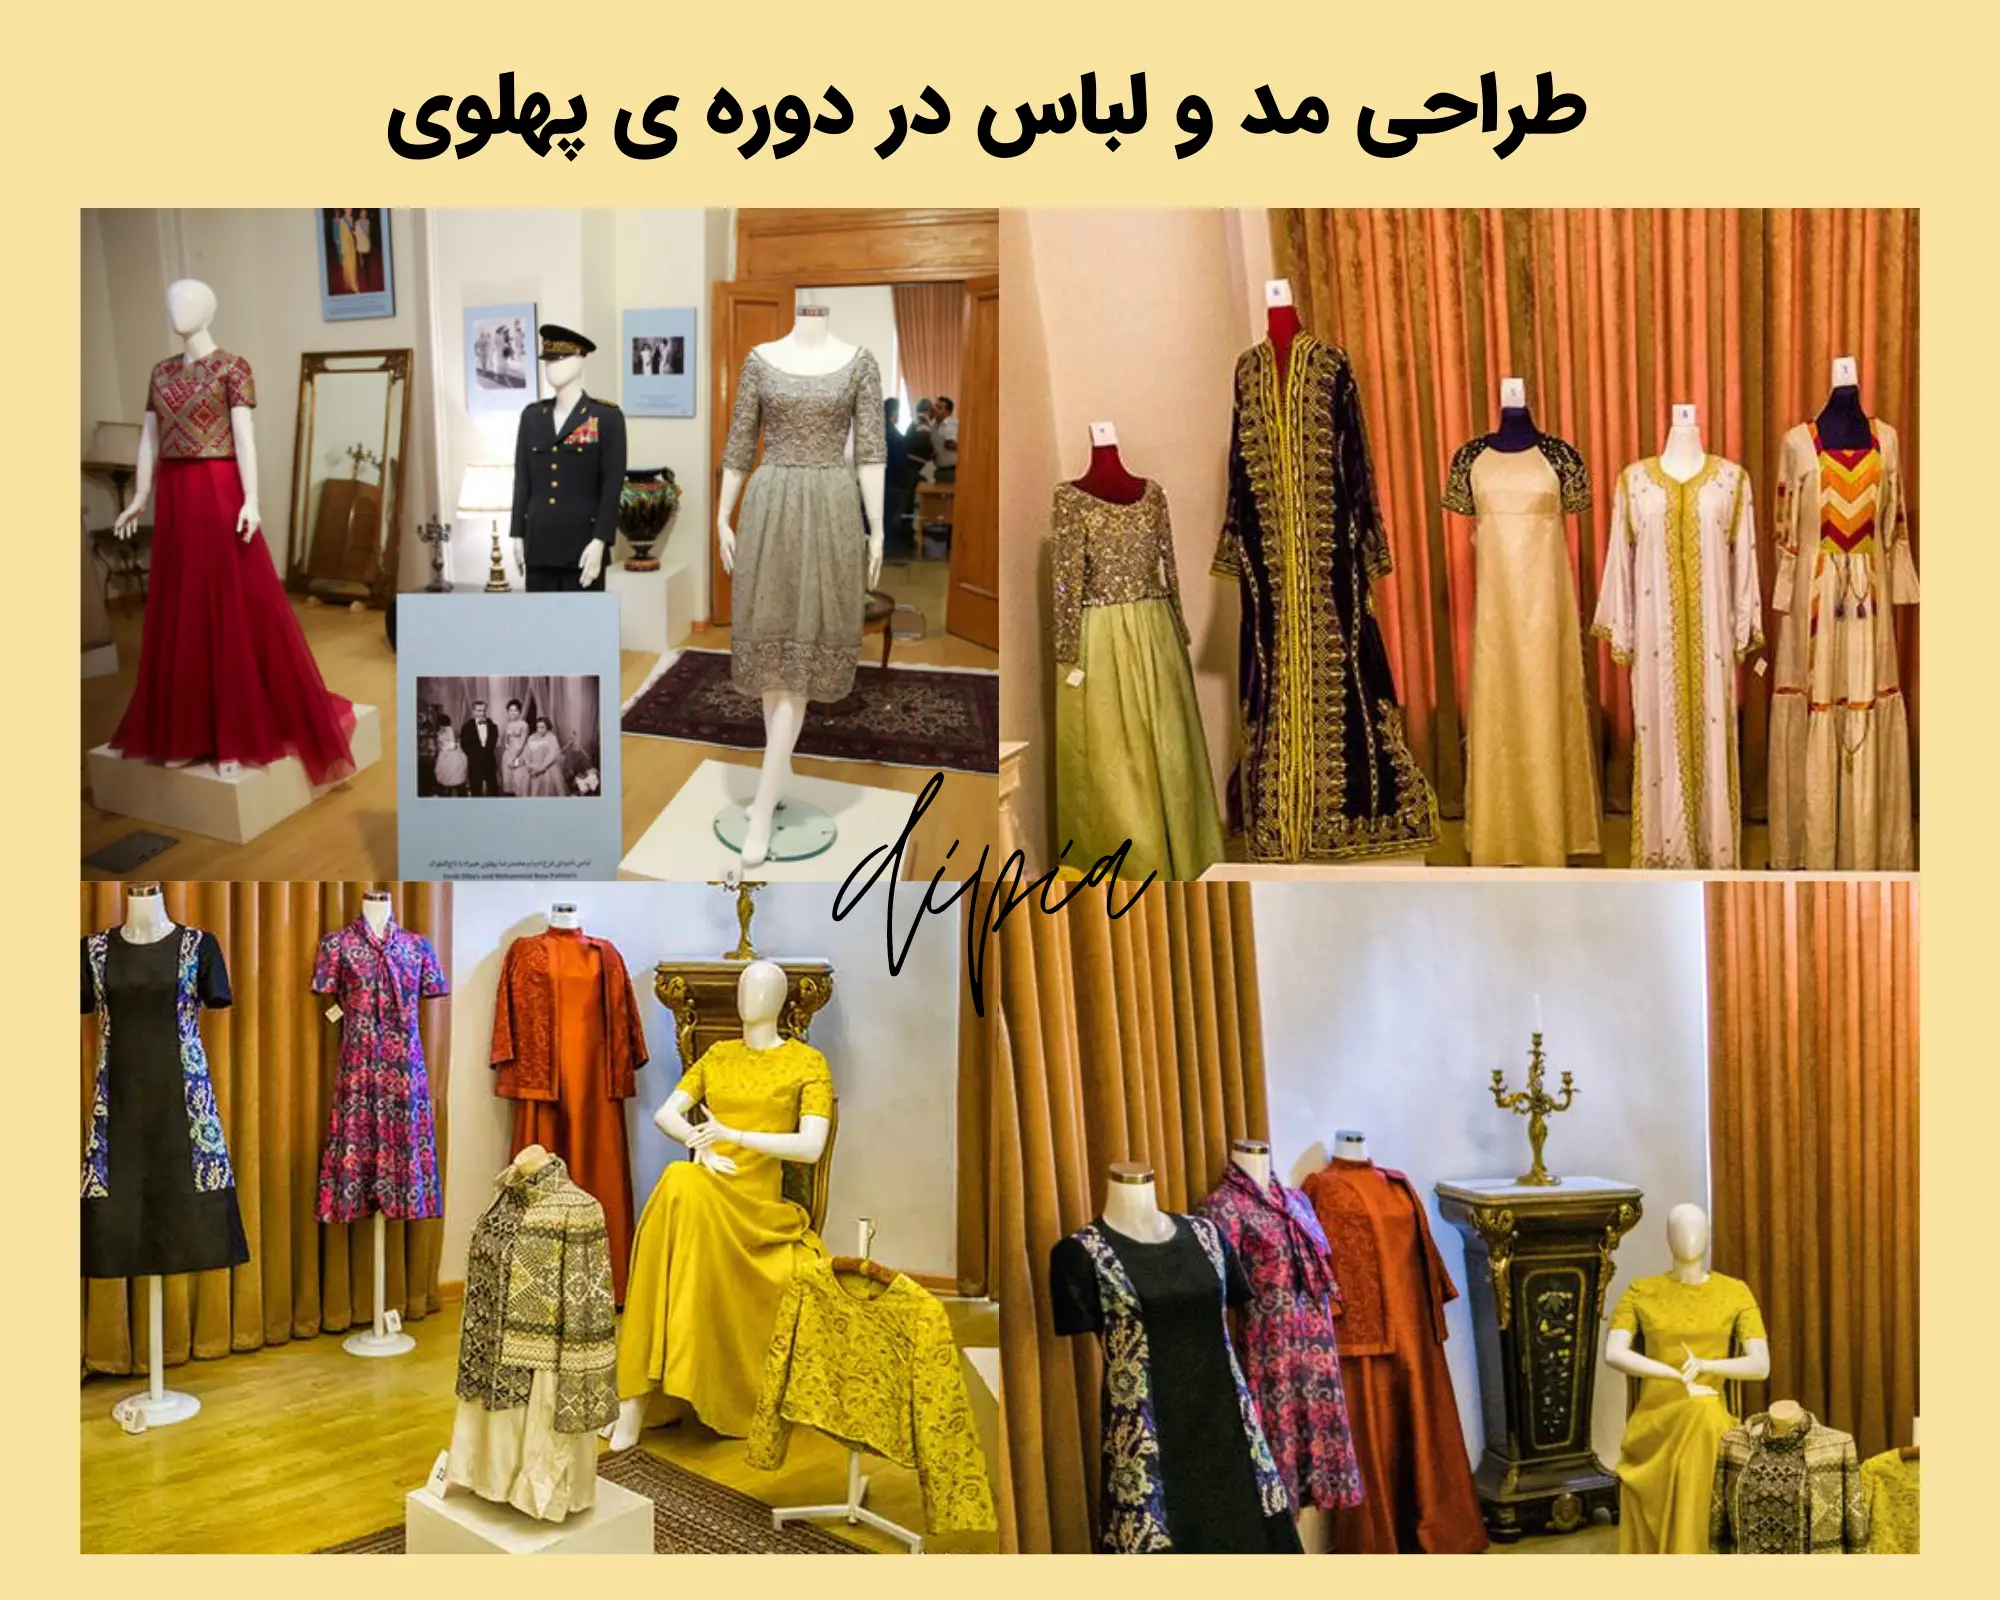 طراحی مد و لباس در دوره ی پهلوی زمان رضا شاه